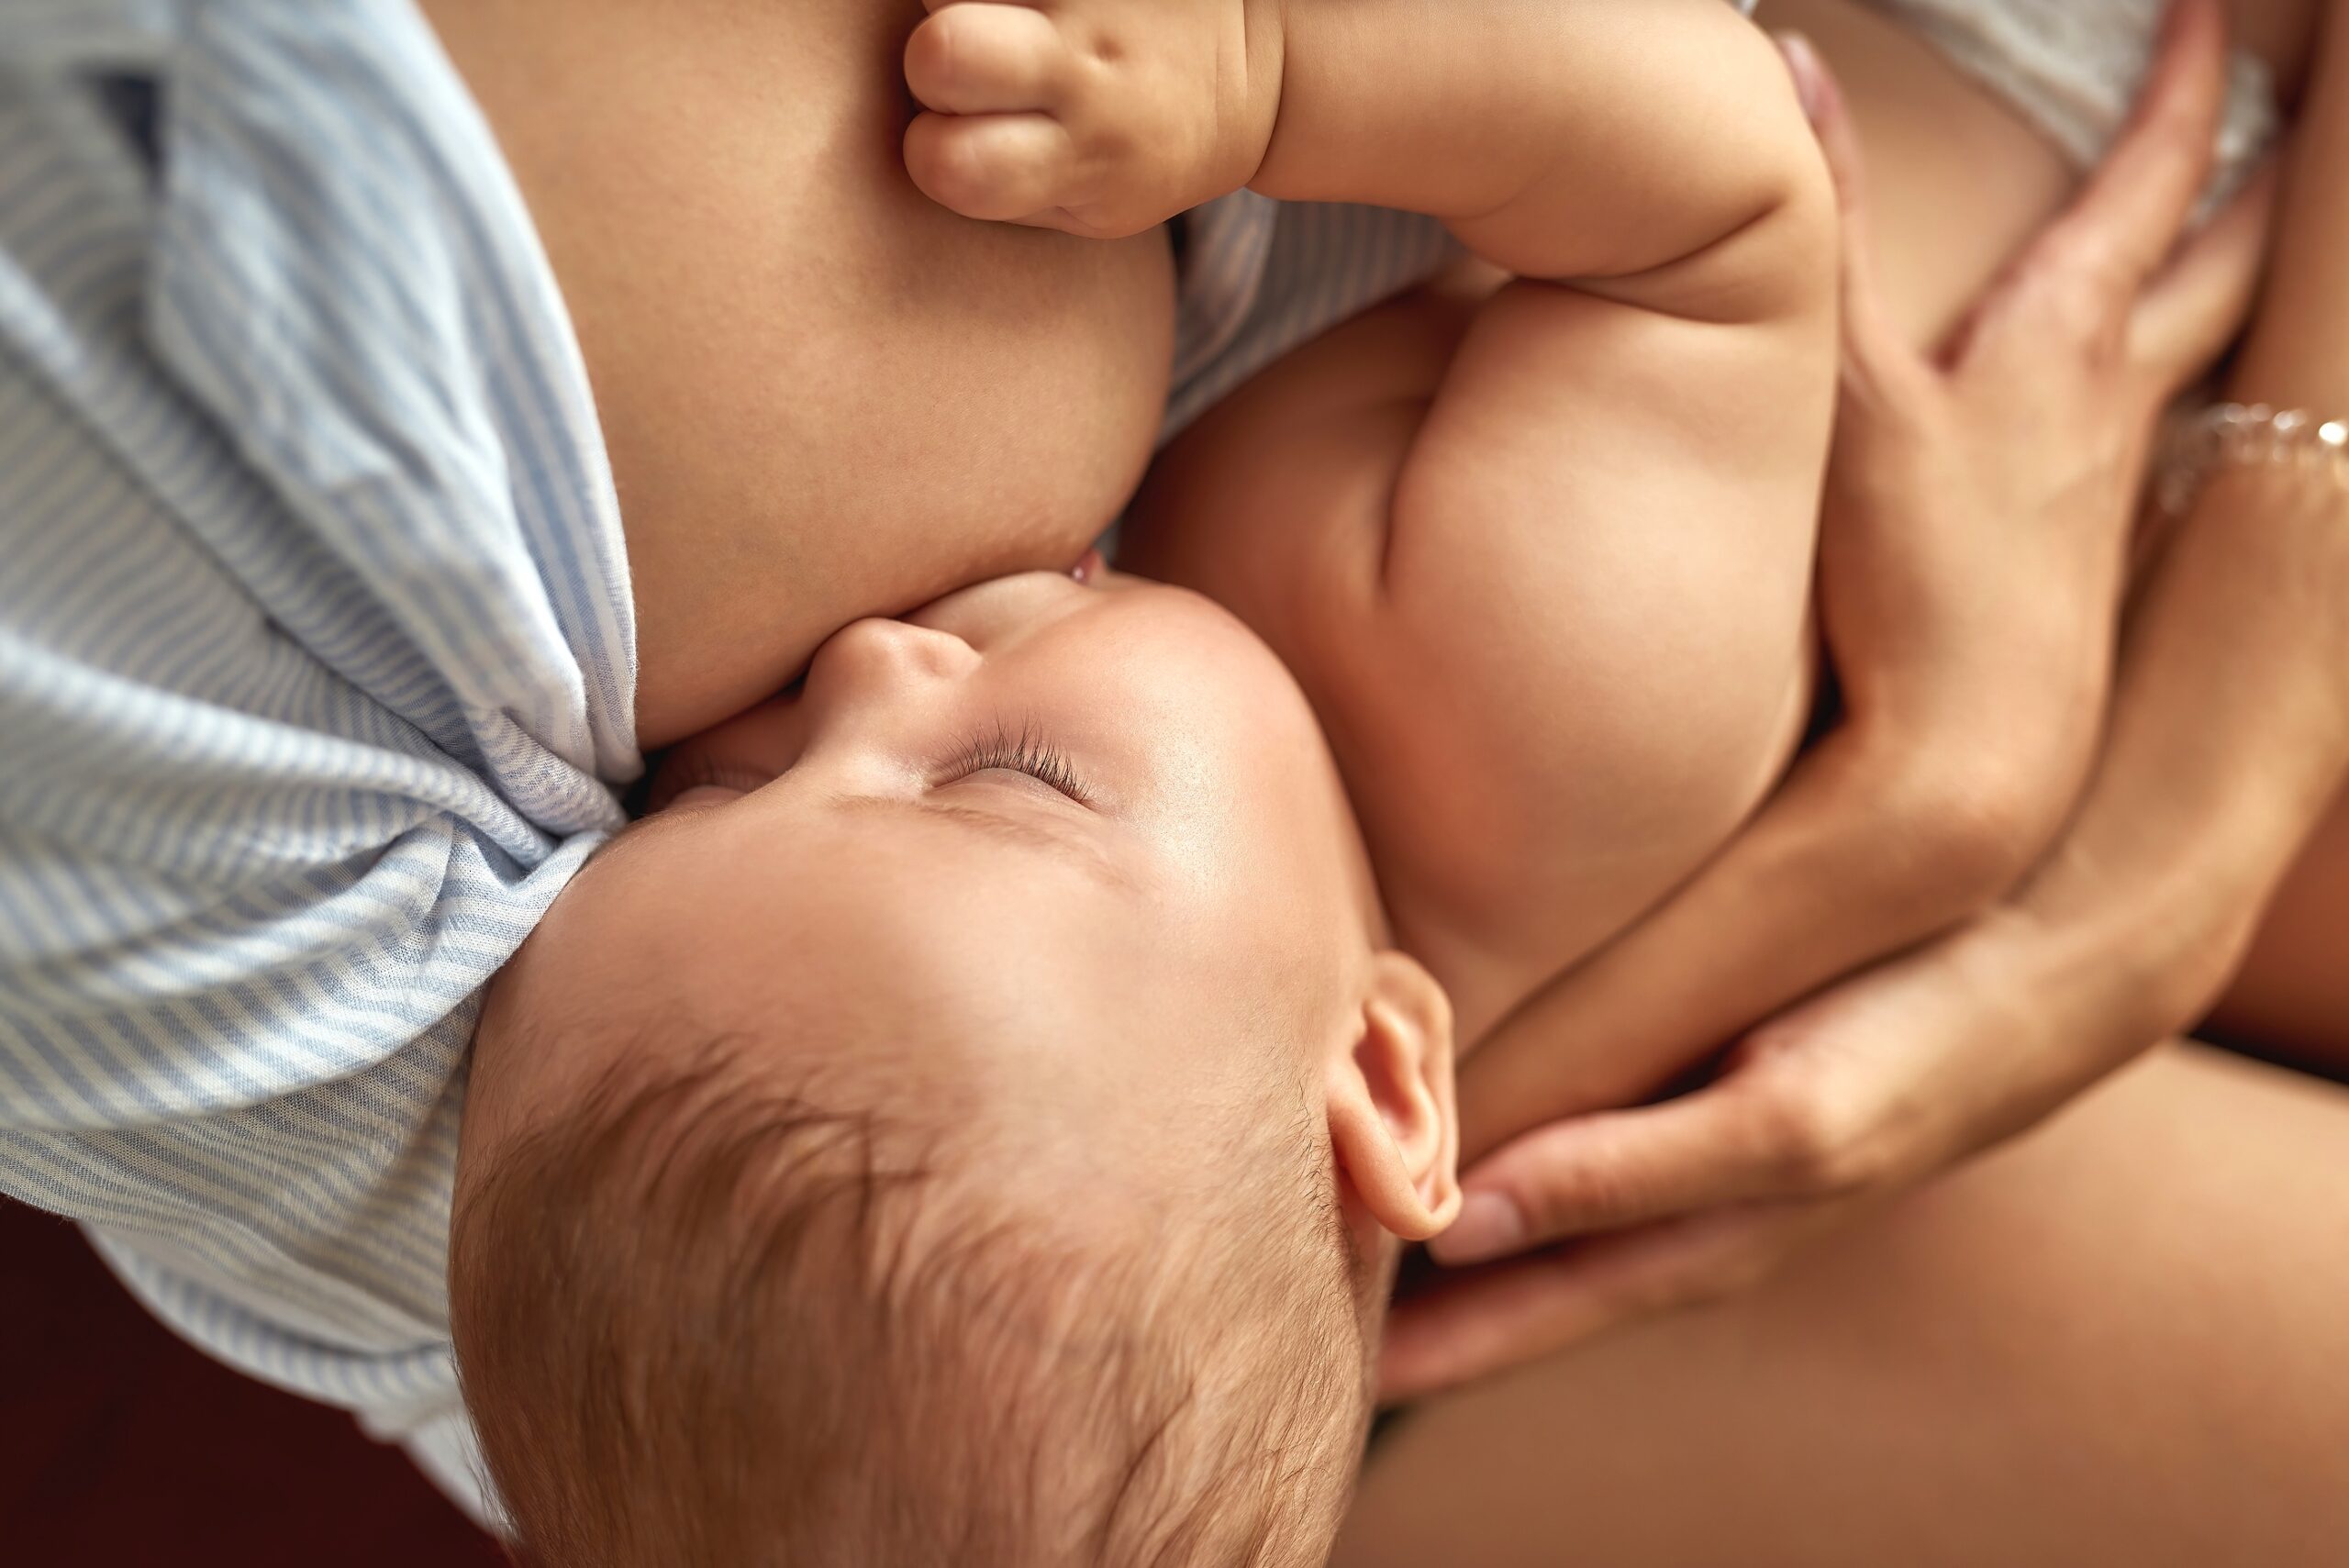 La lactancia materna estimula el desarrollo cerebral